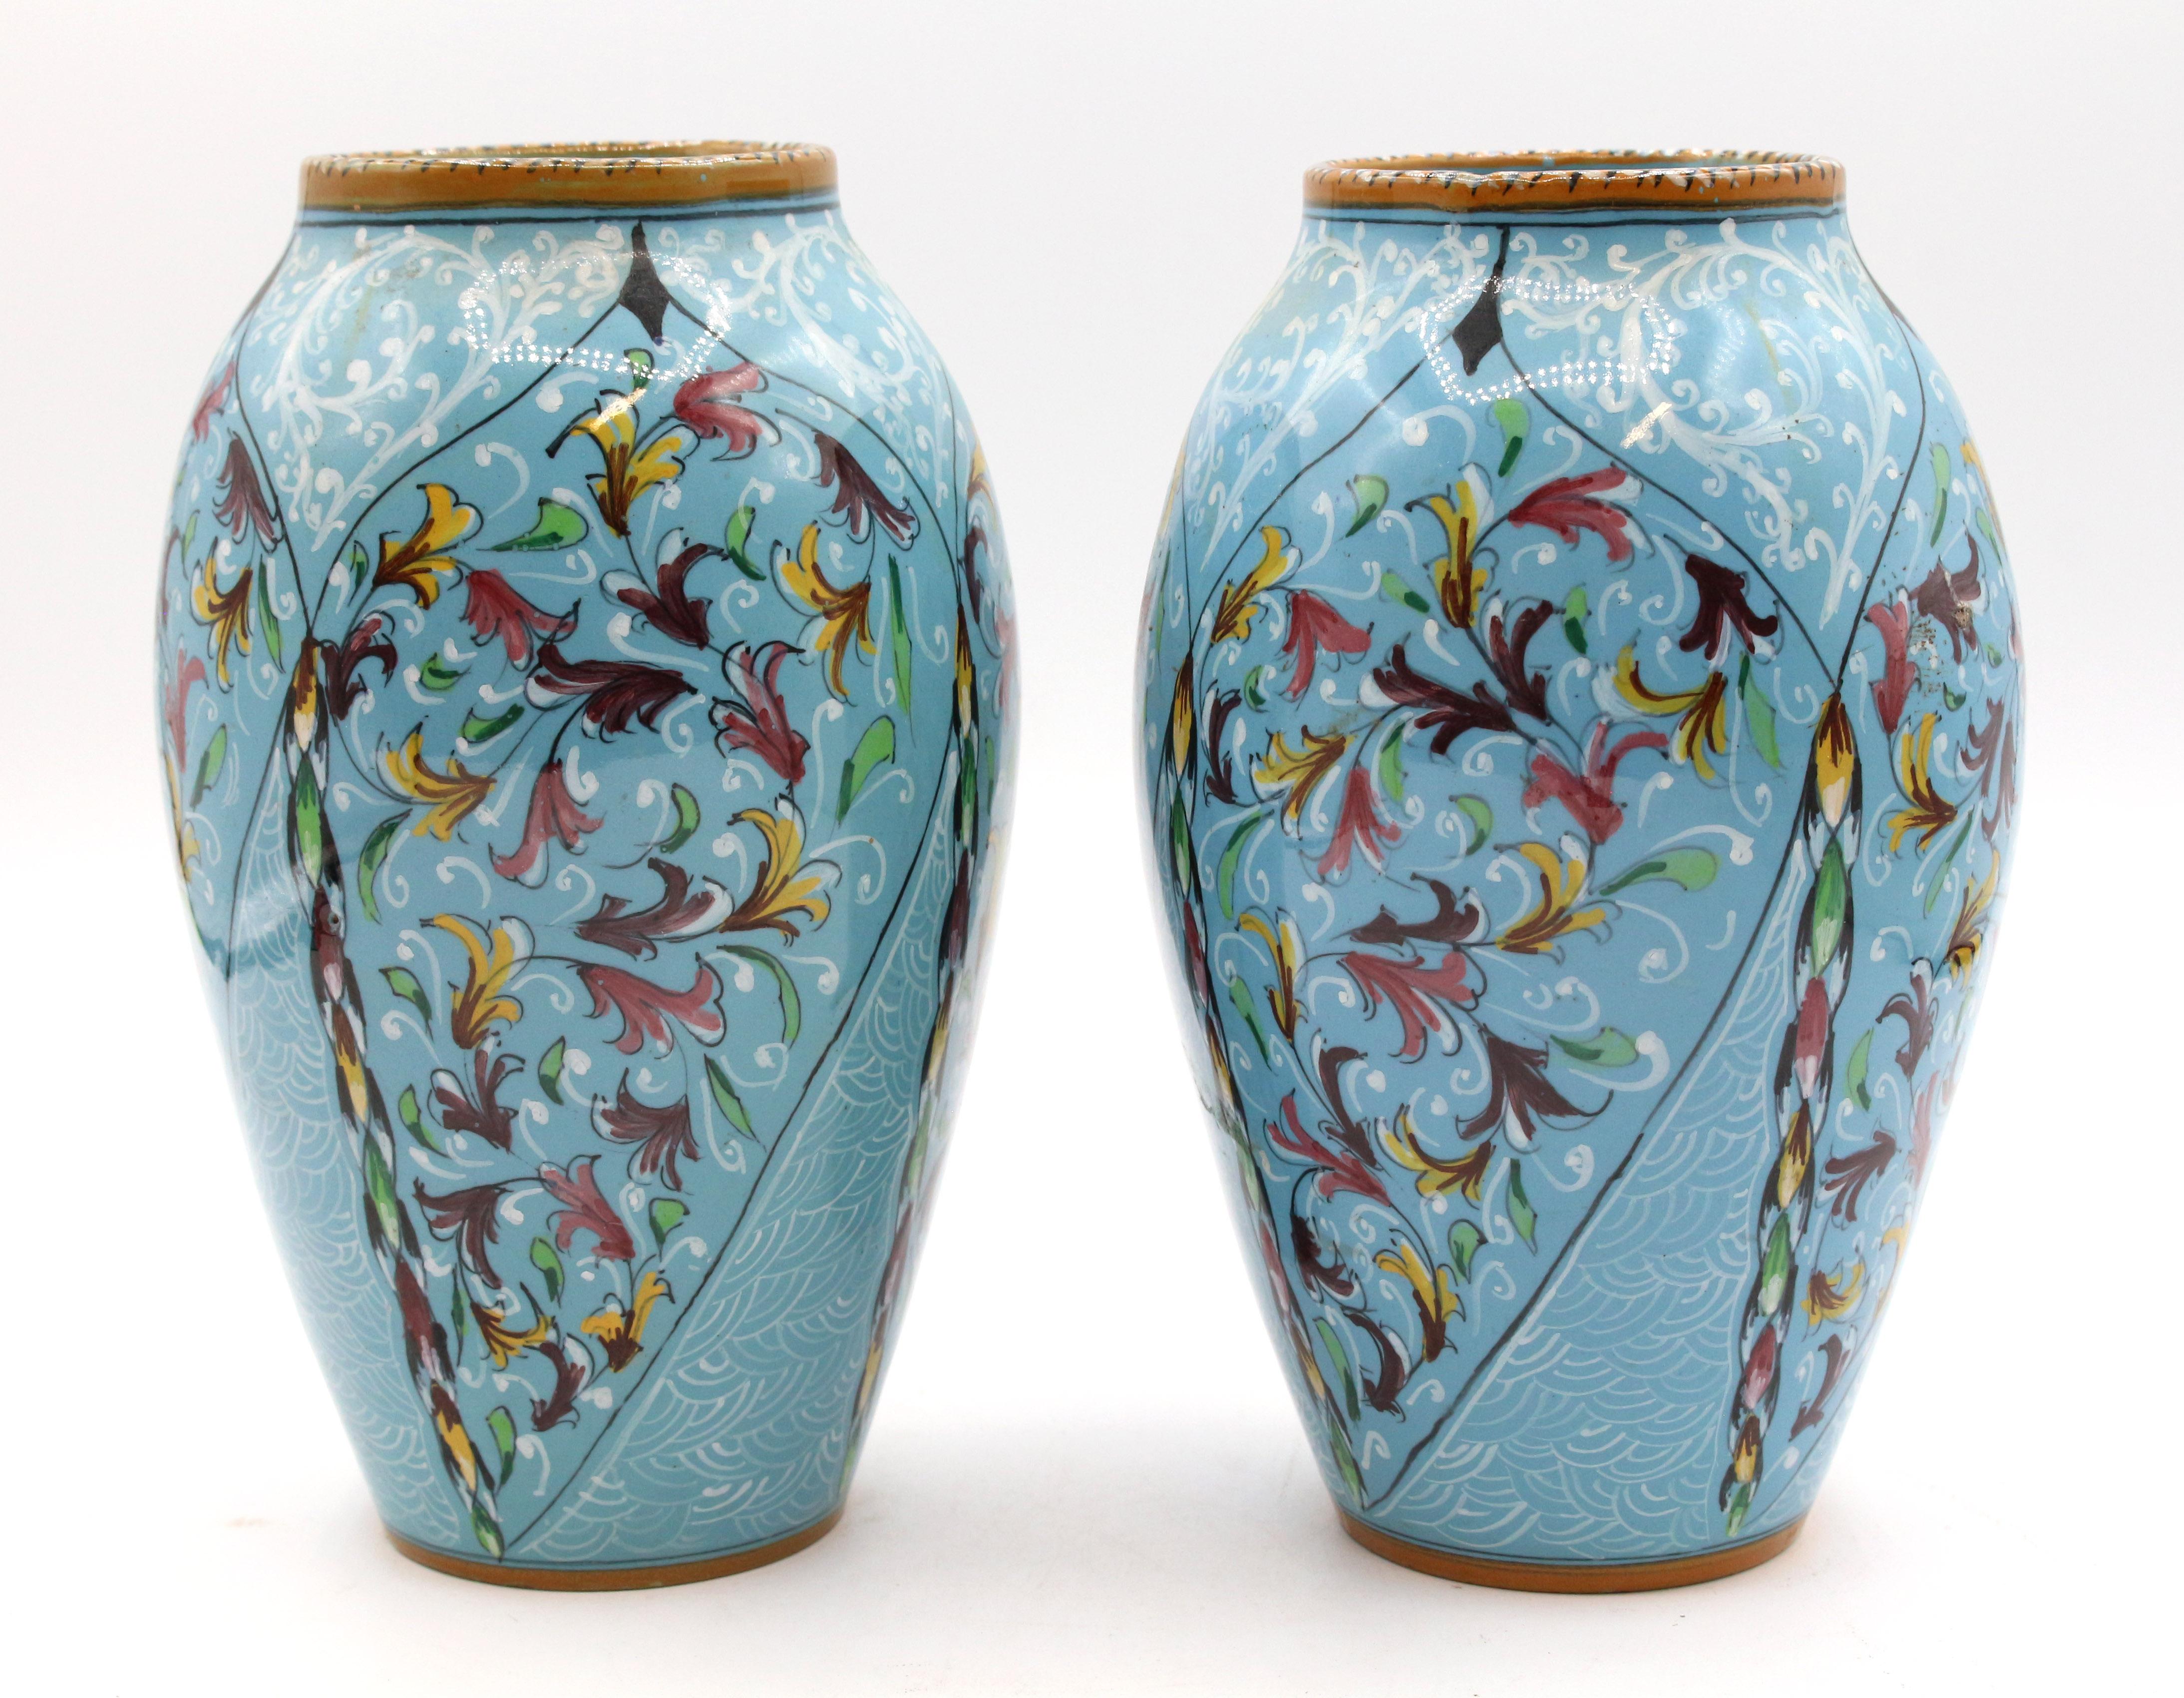 Paire de vases en majolique des années 1900-1920 par Mengaroni, Pesaro, Italie. Décorée à la manière de la Renaissance avec des traceries blanches et des fleurons multicolores sur fond bleu clair avec des bordures moutarde. Ferruccio Mengaroni est